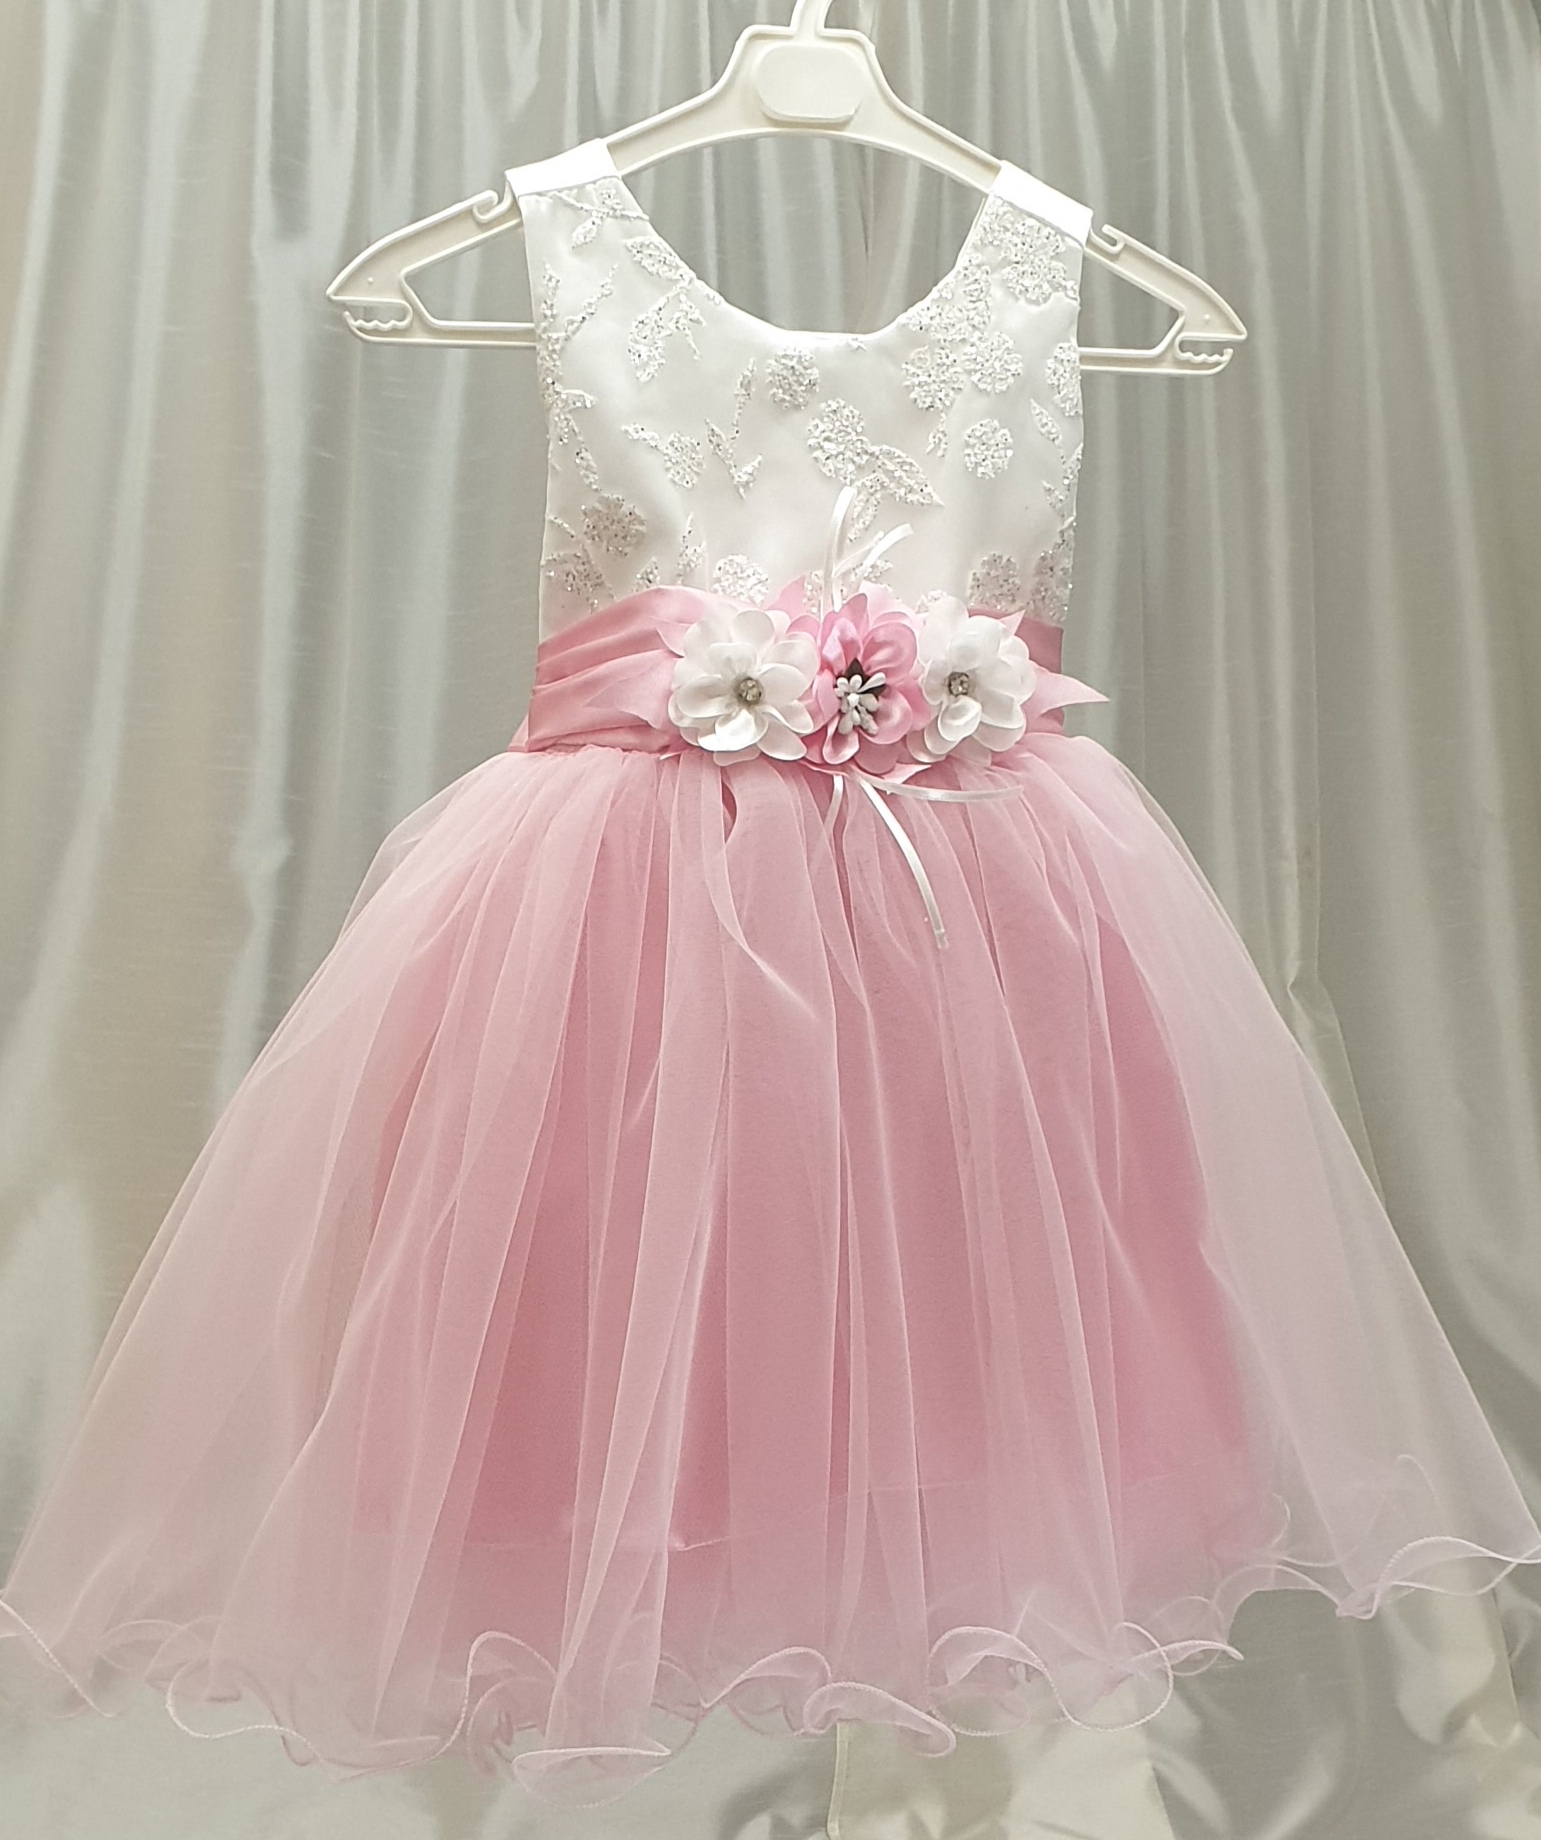 Festklänning flicka rosa 1-5år